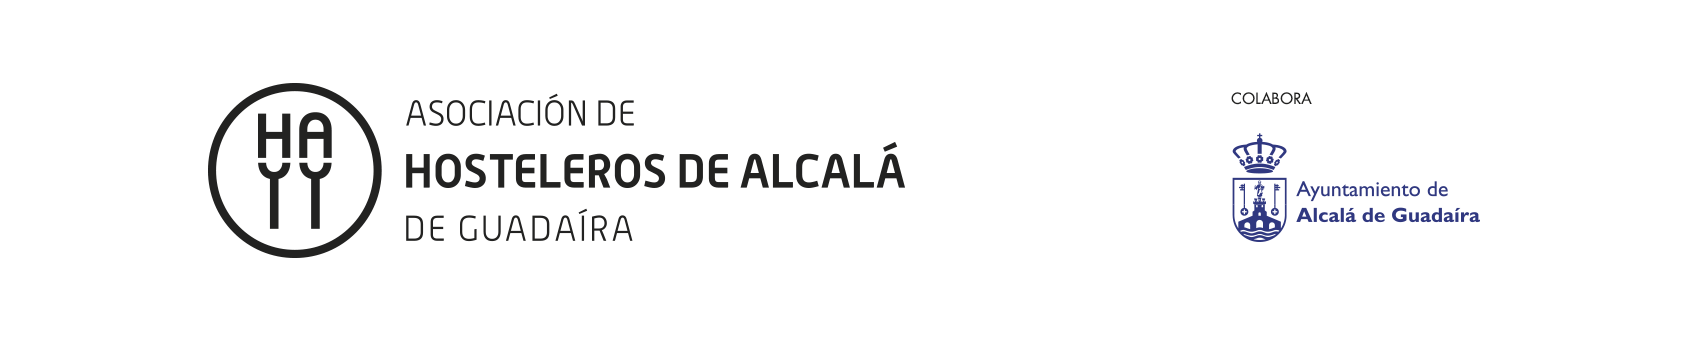 Asociación de hosteleros de Alcalá de Guadaíra